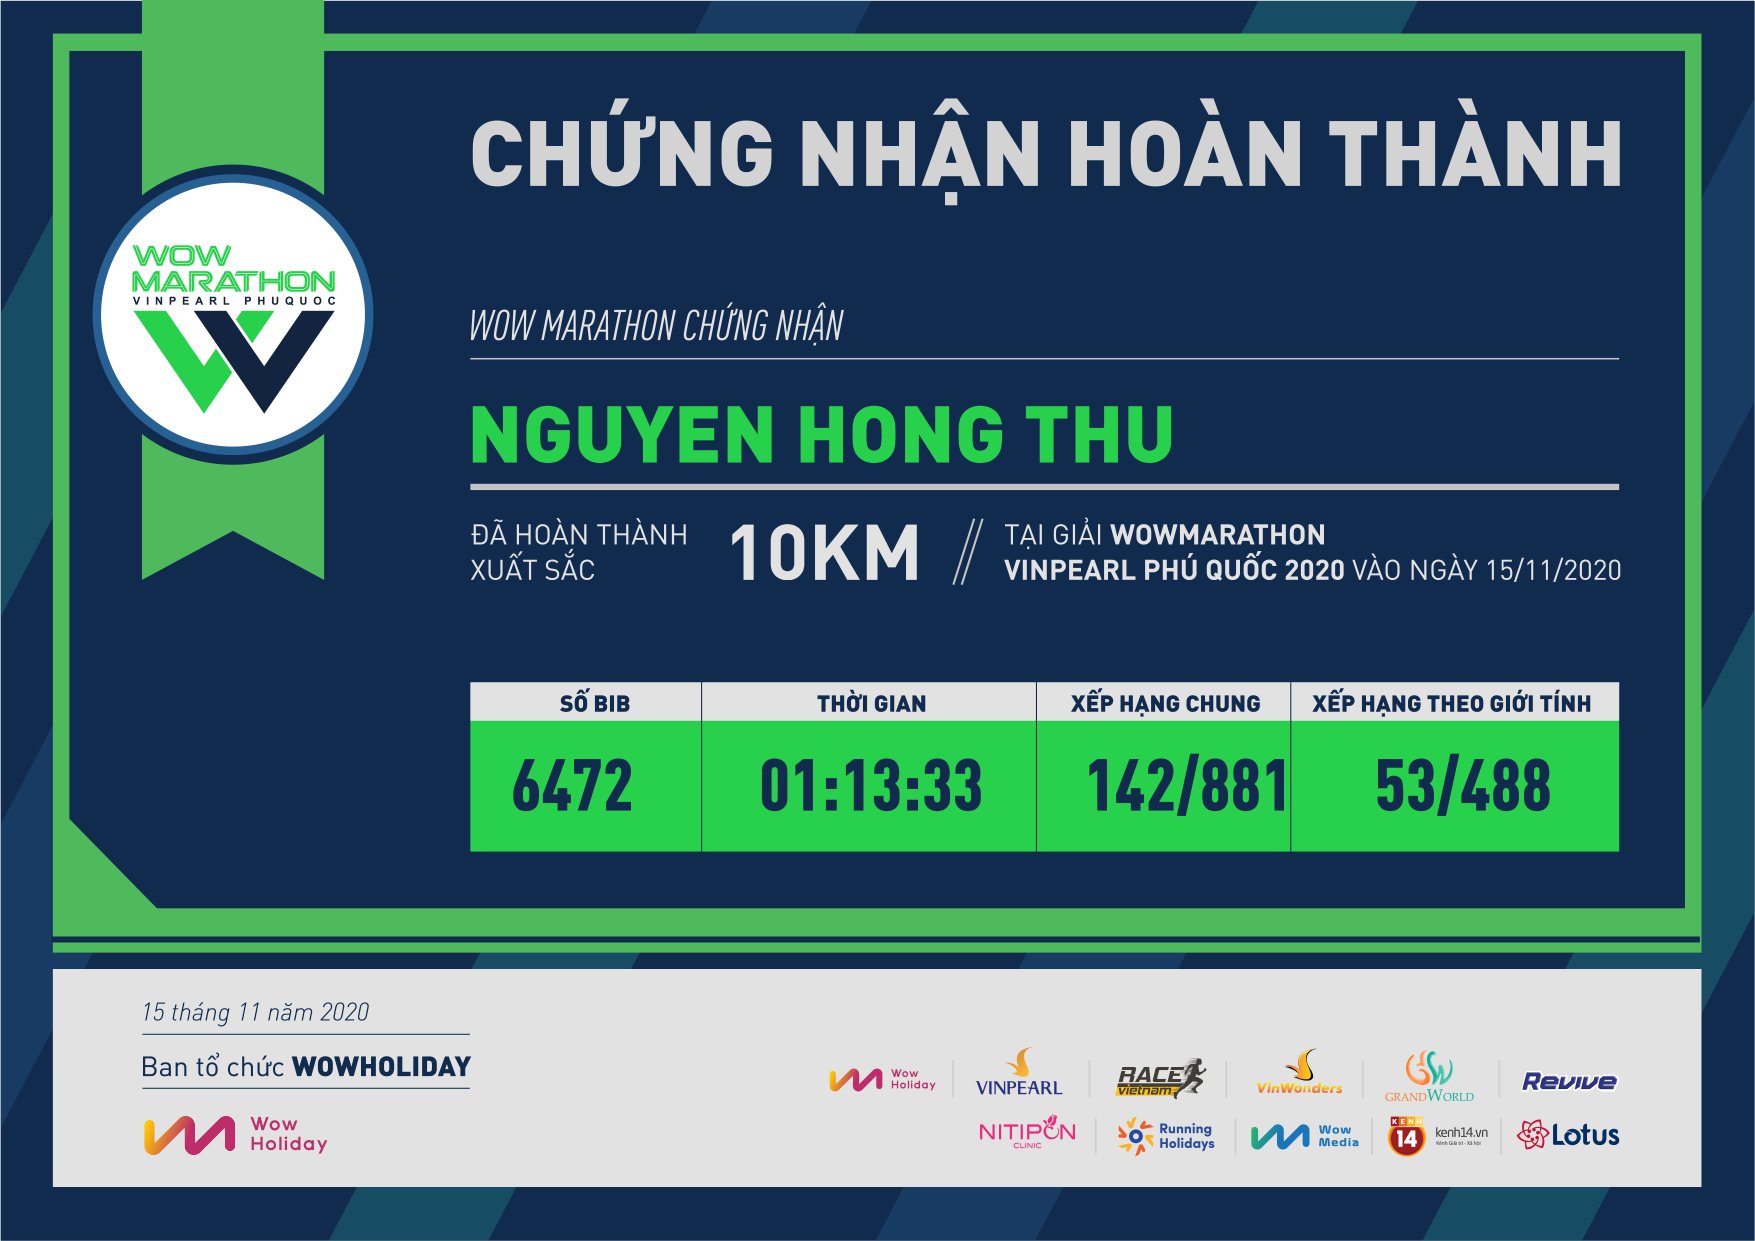 6472 - Nguyen Hong Thu